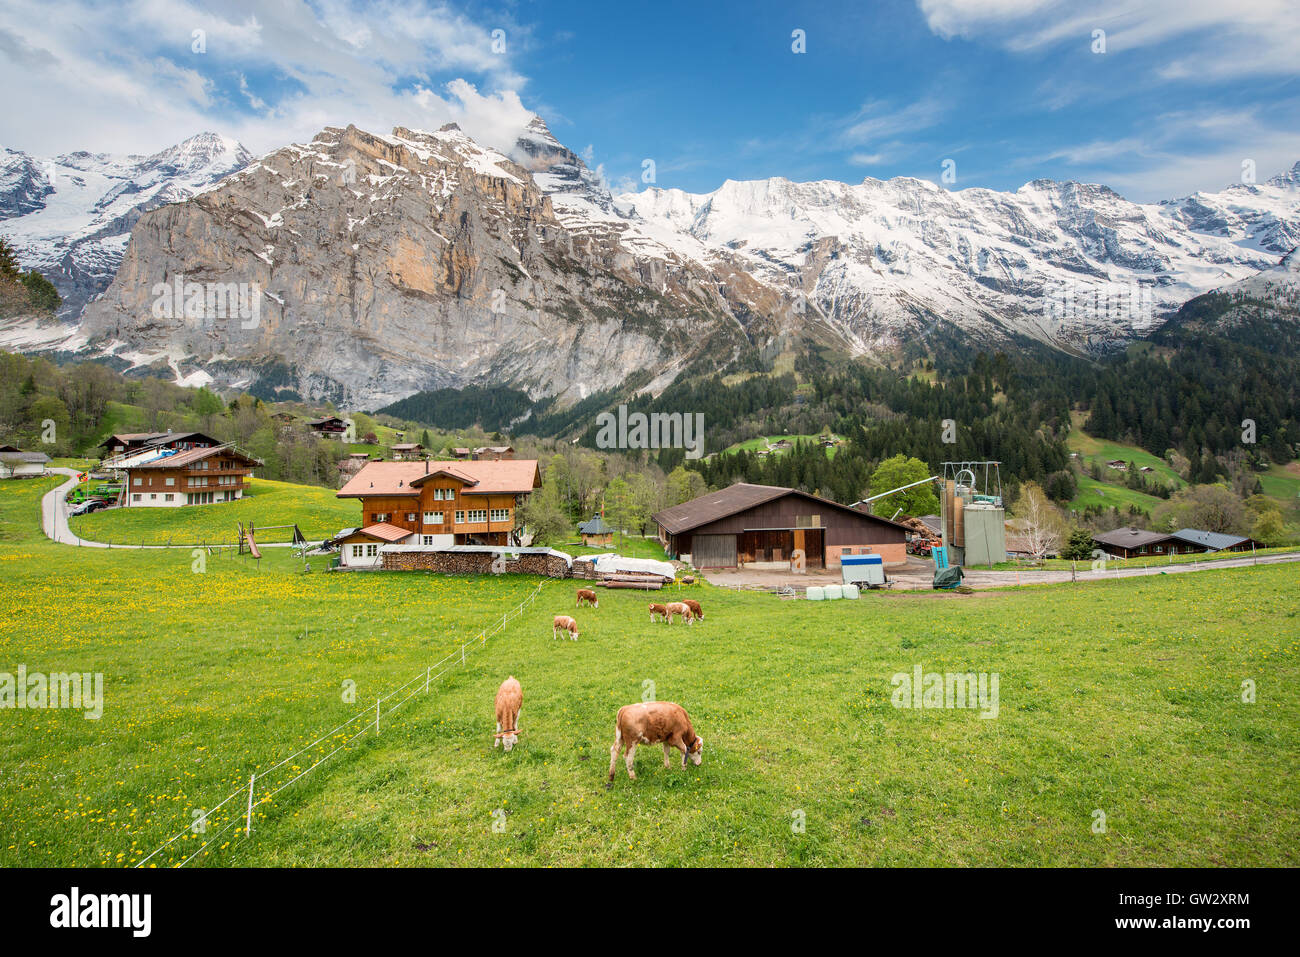 La Vaca y el caserío con alpes suizos de montaña de nieve en el fondo en Grindelwald, Suiza.Ganadería, Agricultura en Suiza. Foto de stock